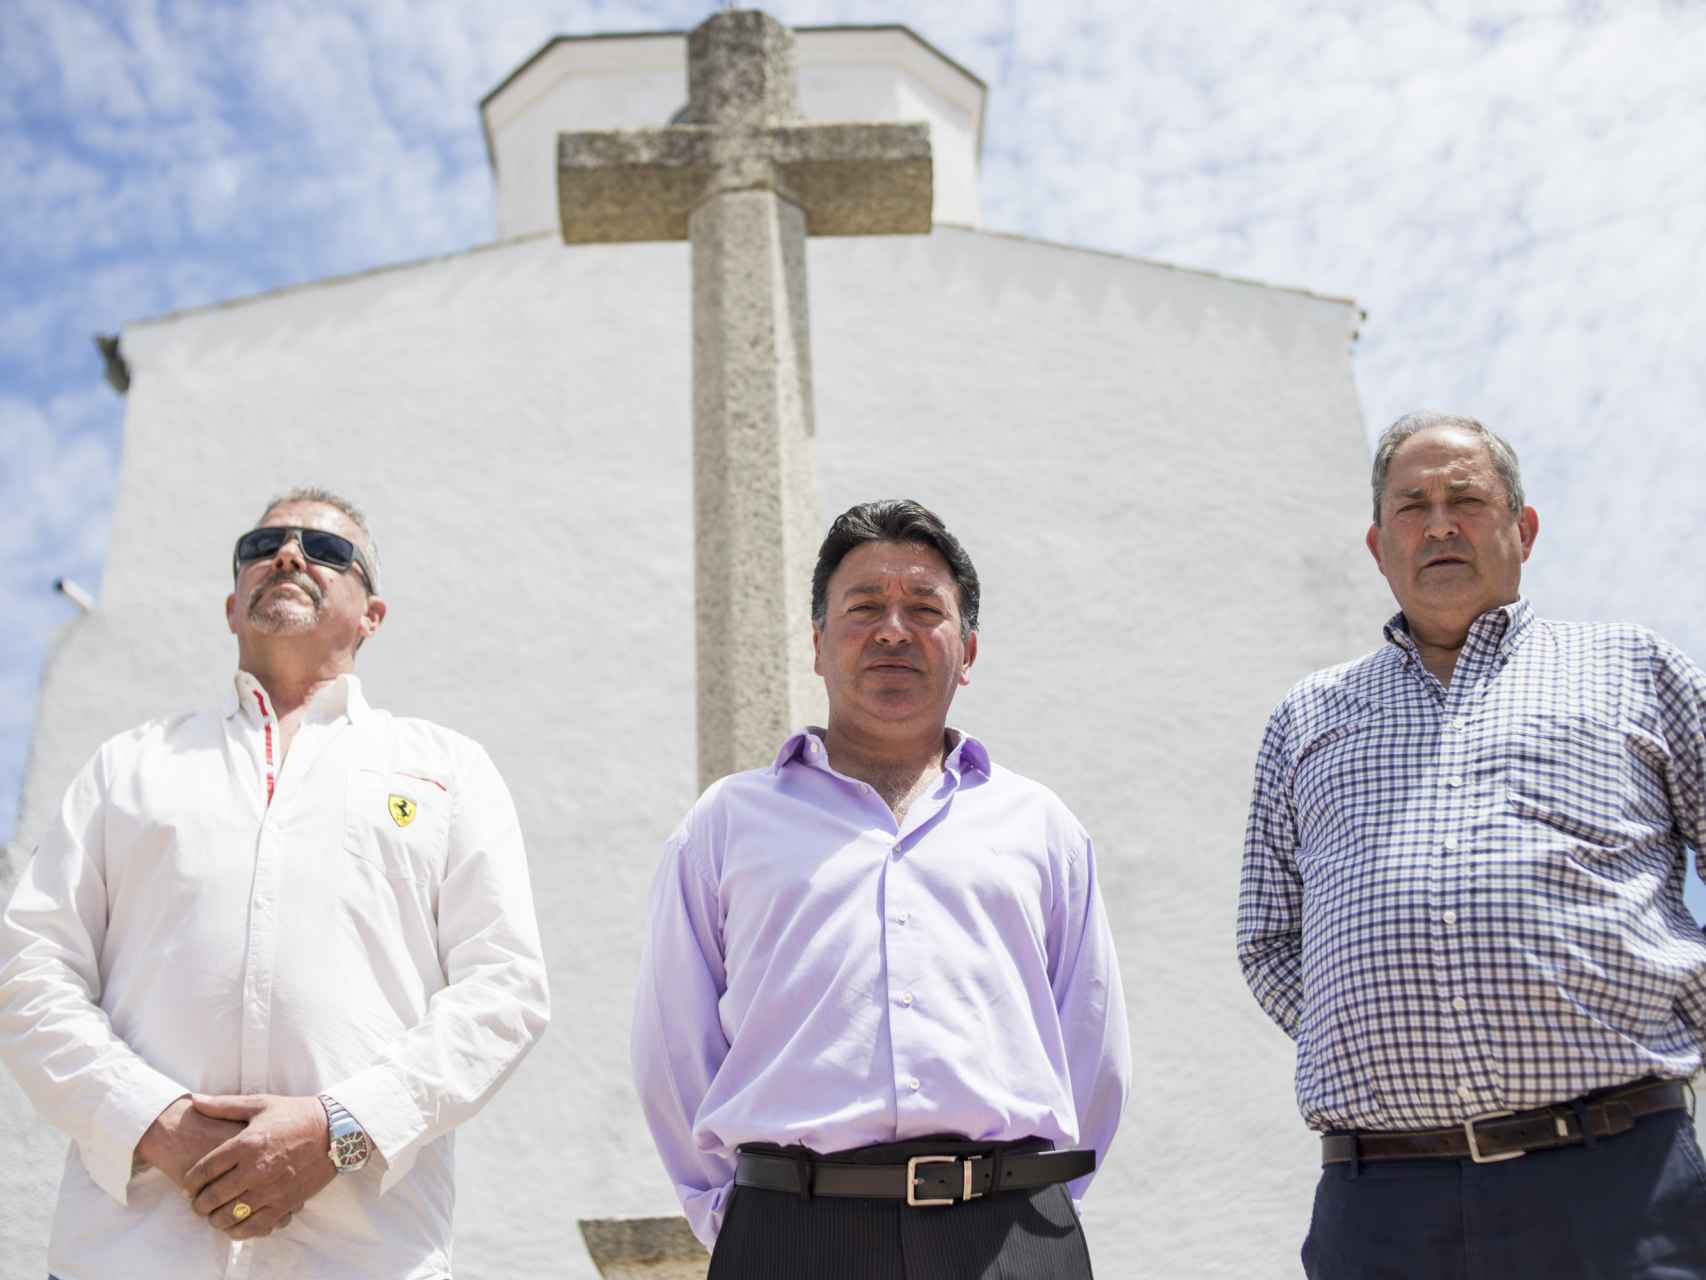 El alcalde (centro) con dos vecinos del pueblo frente a la cruz que emula a la del Valle de los Caídos y frente a la  cual pretenden enterrar al dictador.